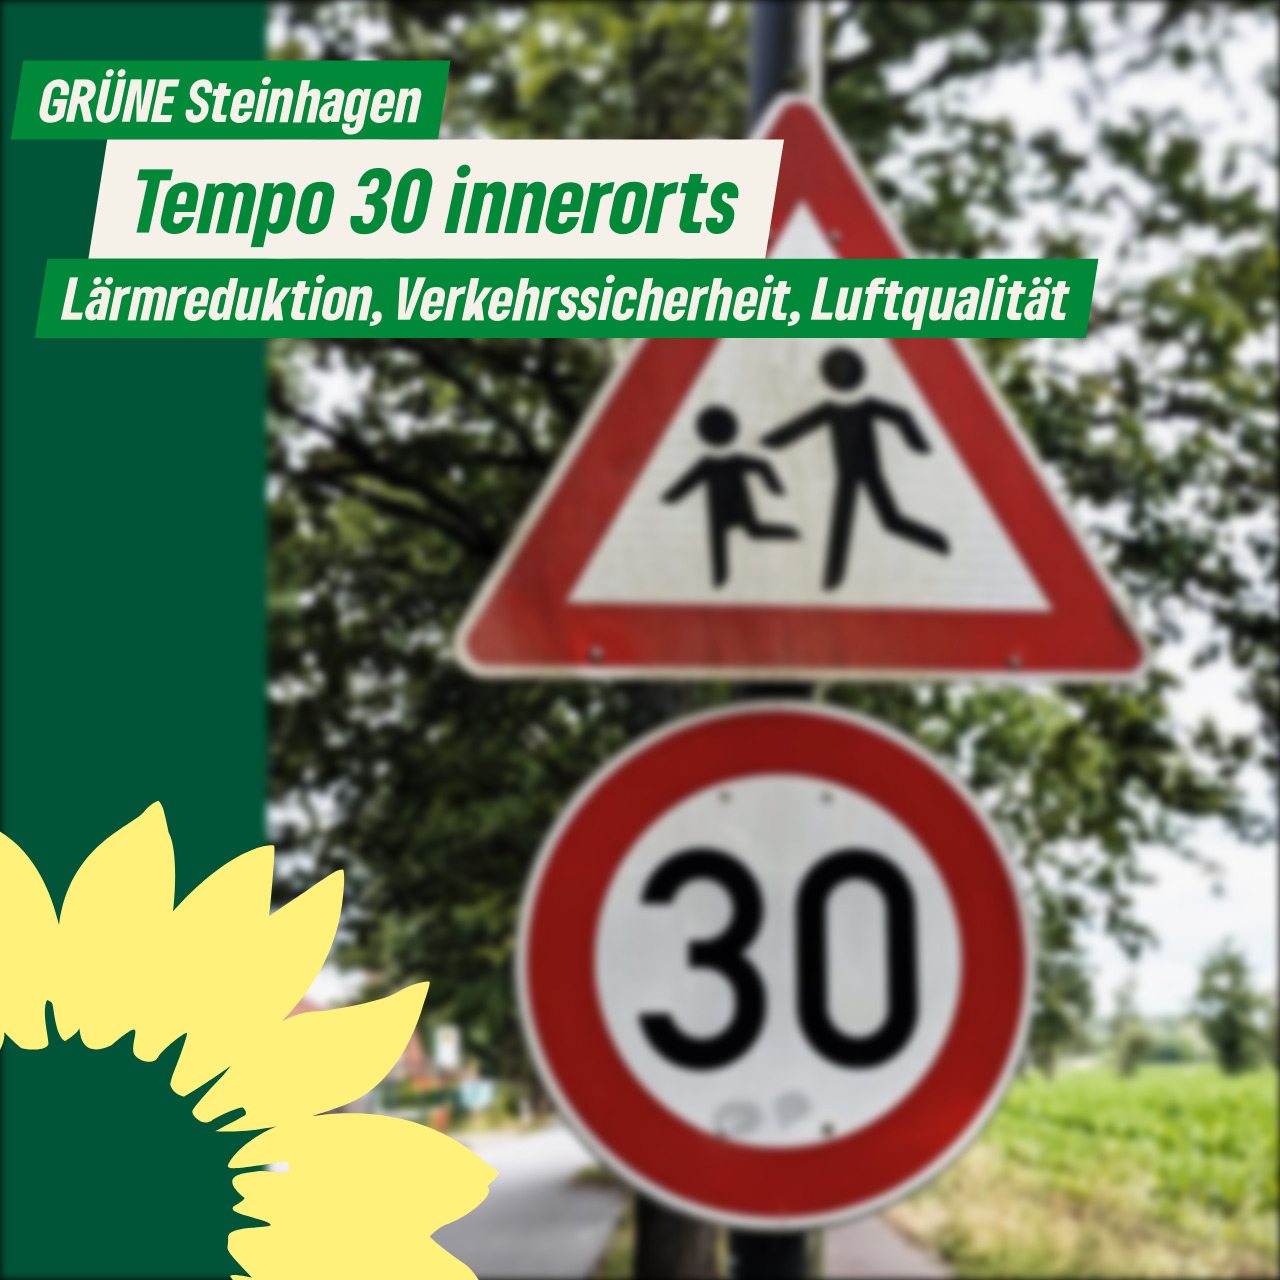 Stellungnahme zum Thema Tempo 30 innerorts in Steinhagen